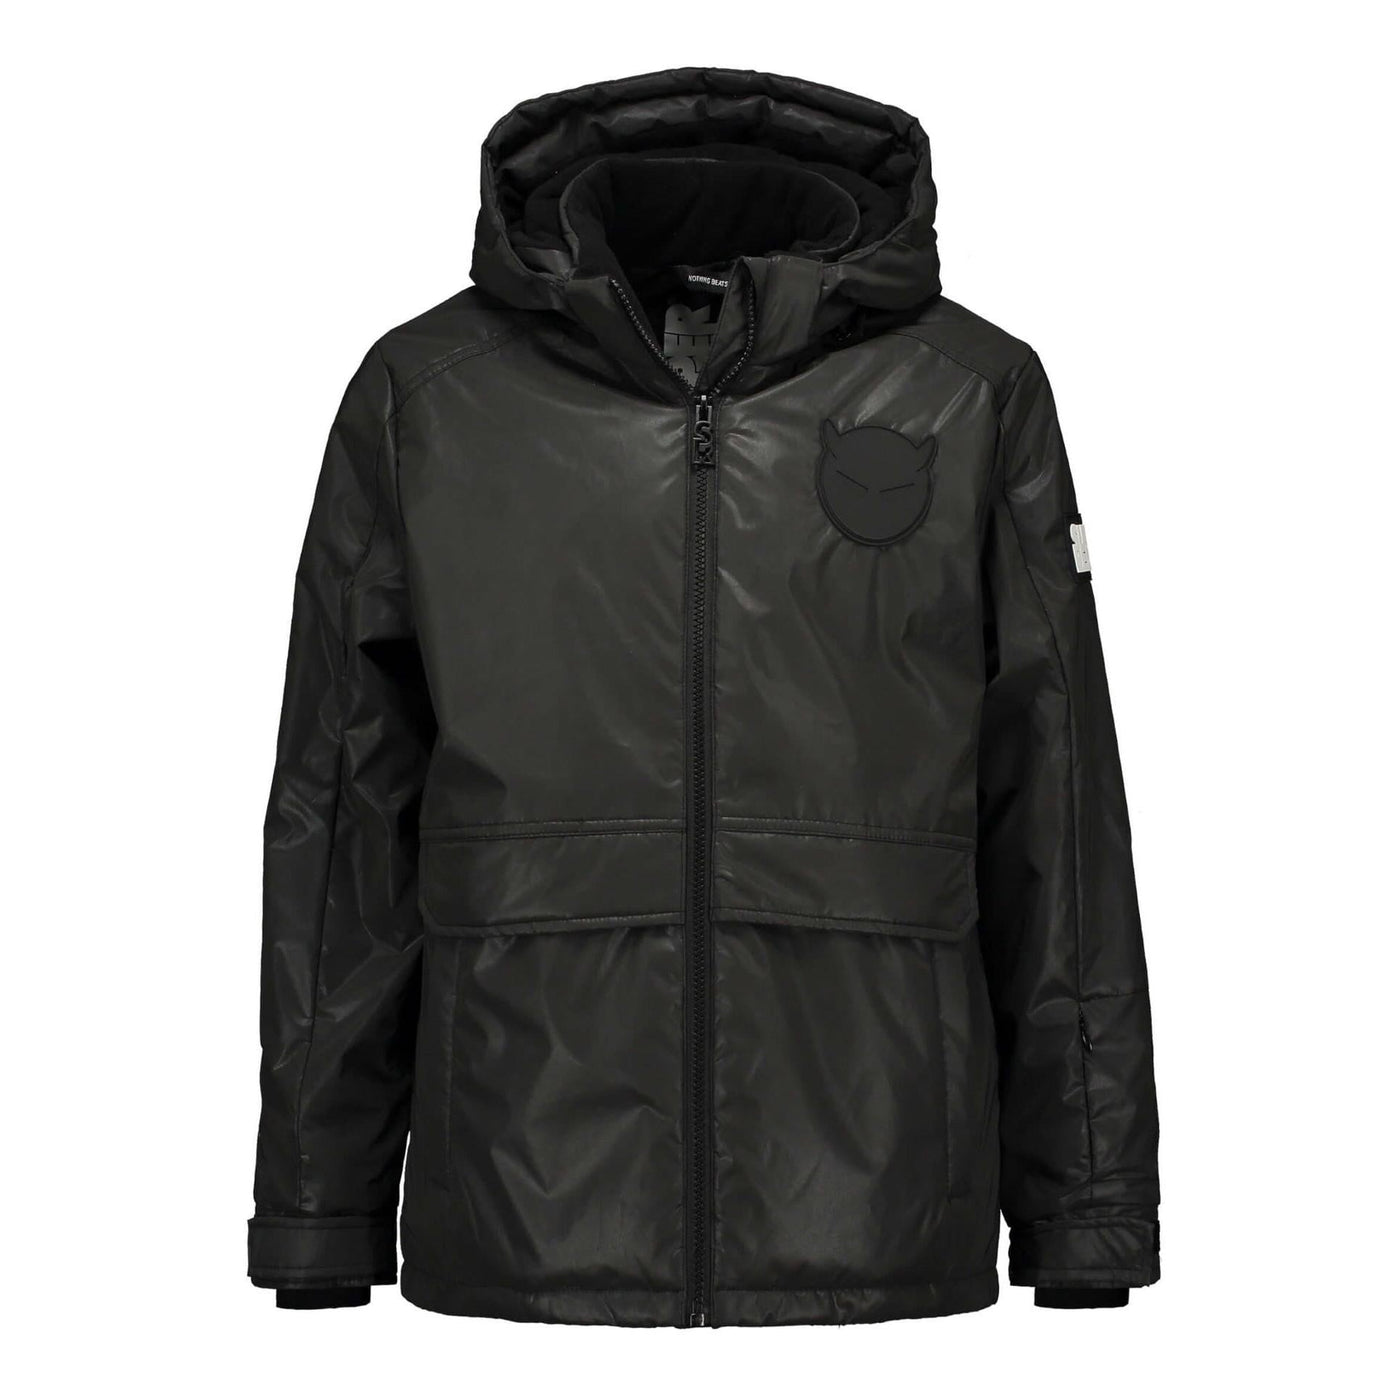 SuperRebel Outerwear Jacket SuperRebel Reflective Black Ski Jacket